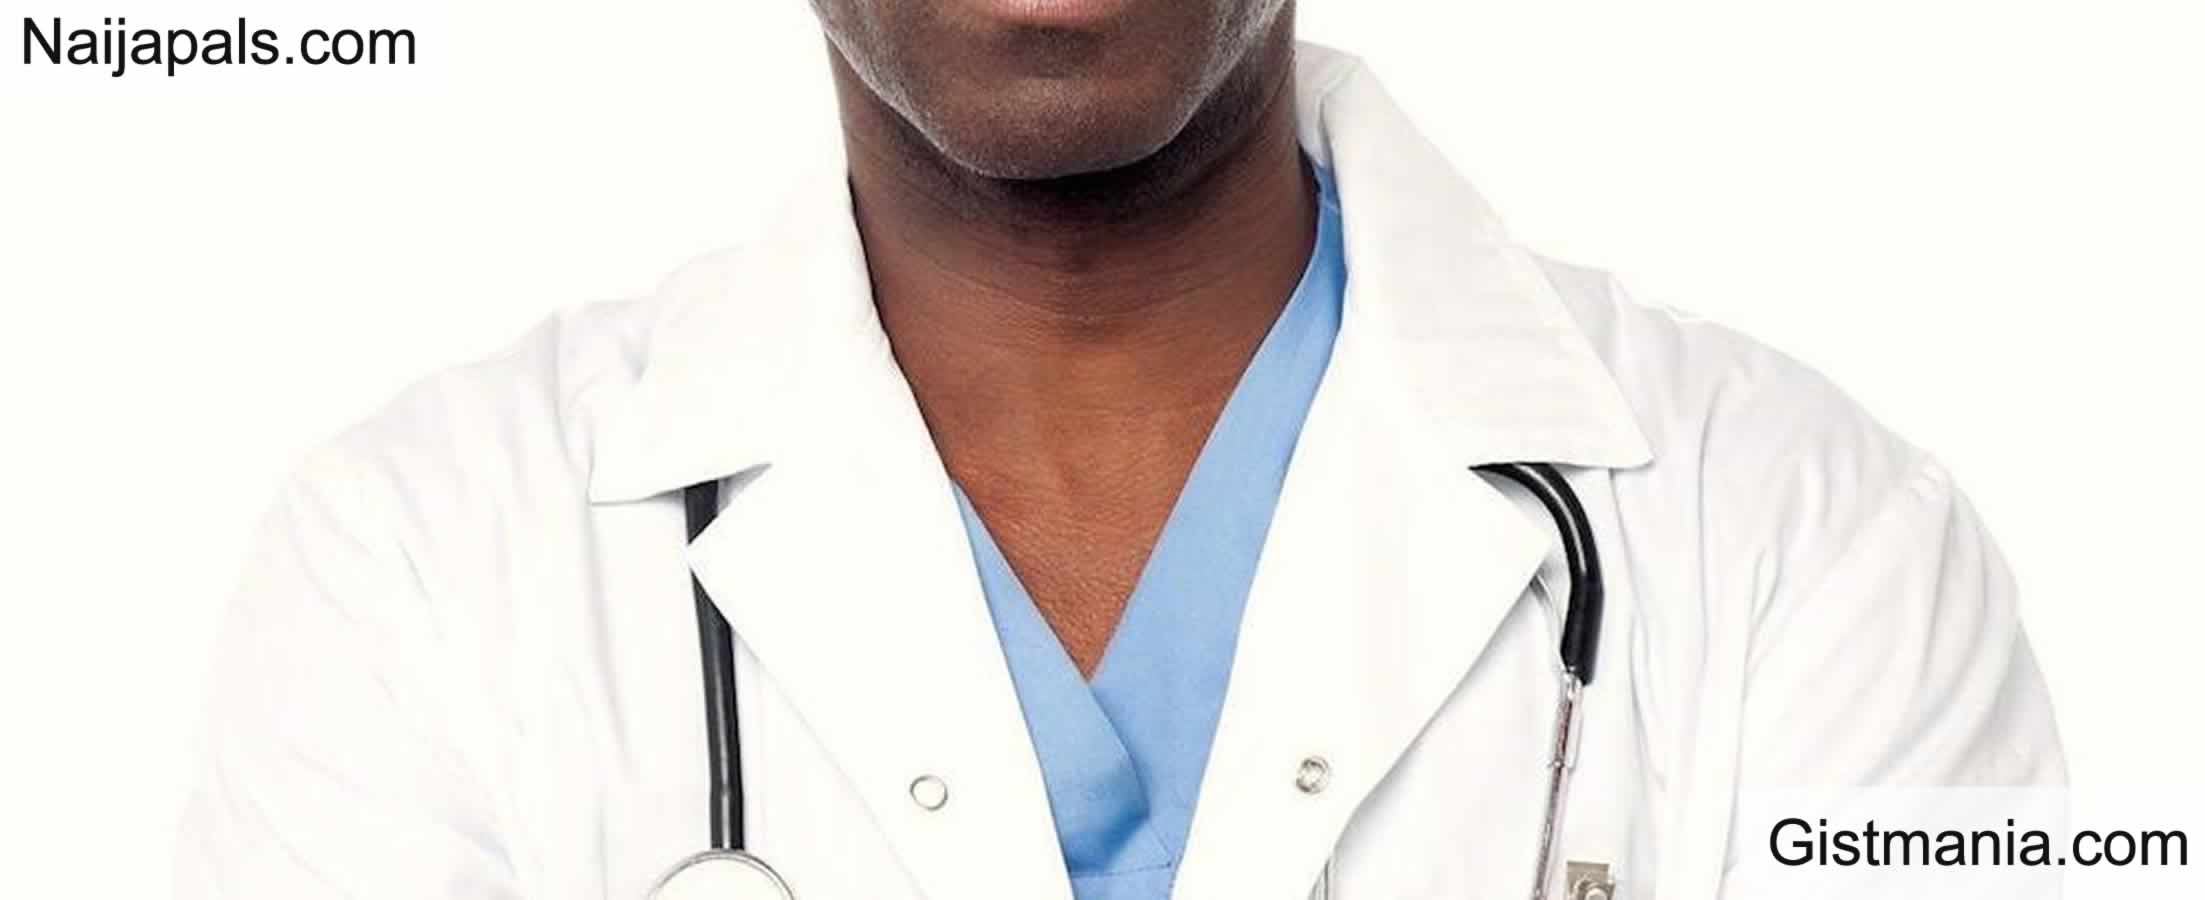 Lagos Police Arrest Fake Medical Doctor, Seal Hospital